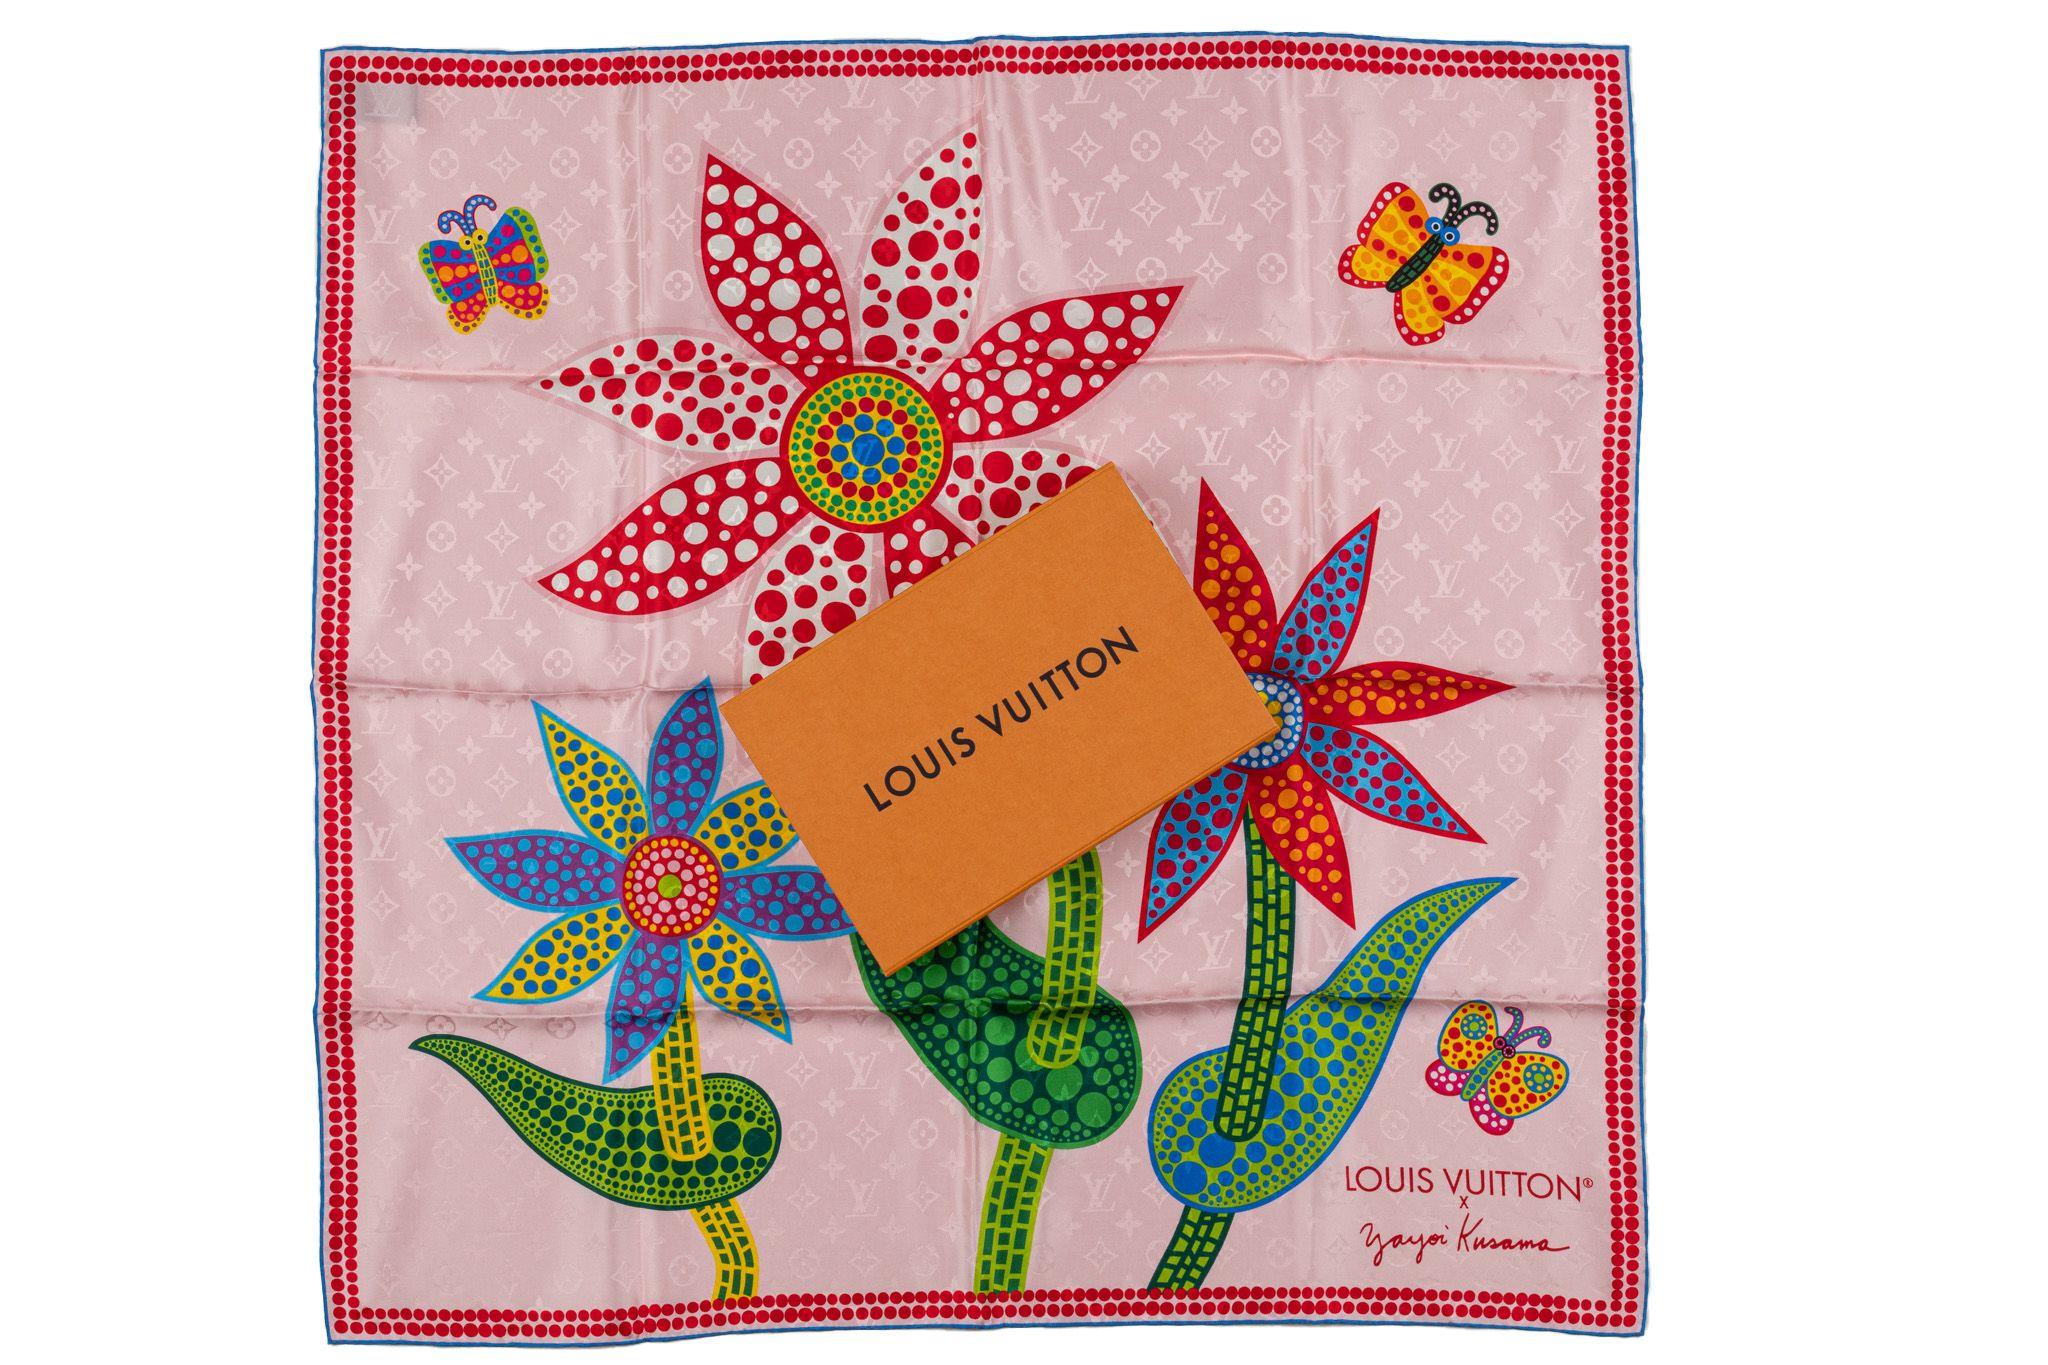 Louis Vuitton x Yayoi Kusama floral square 90 Schal. Dieser Schal aus hochwertigem Seidenstoff eignet sich für alle Gelegenheiten, von legeren Ausflügen bis hin zu formellen Anlässen. Die schöne rosa Farbe und das florale Muster machen es zu etwas